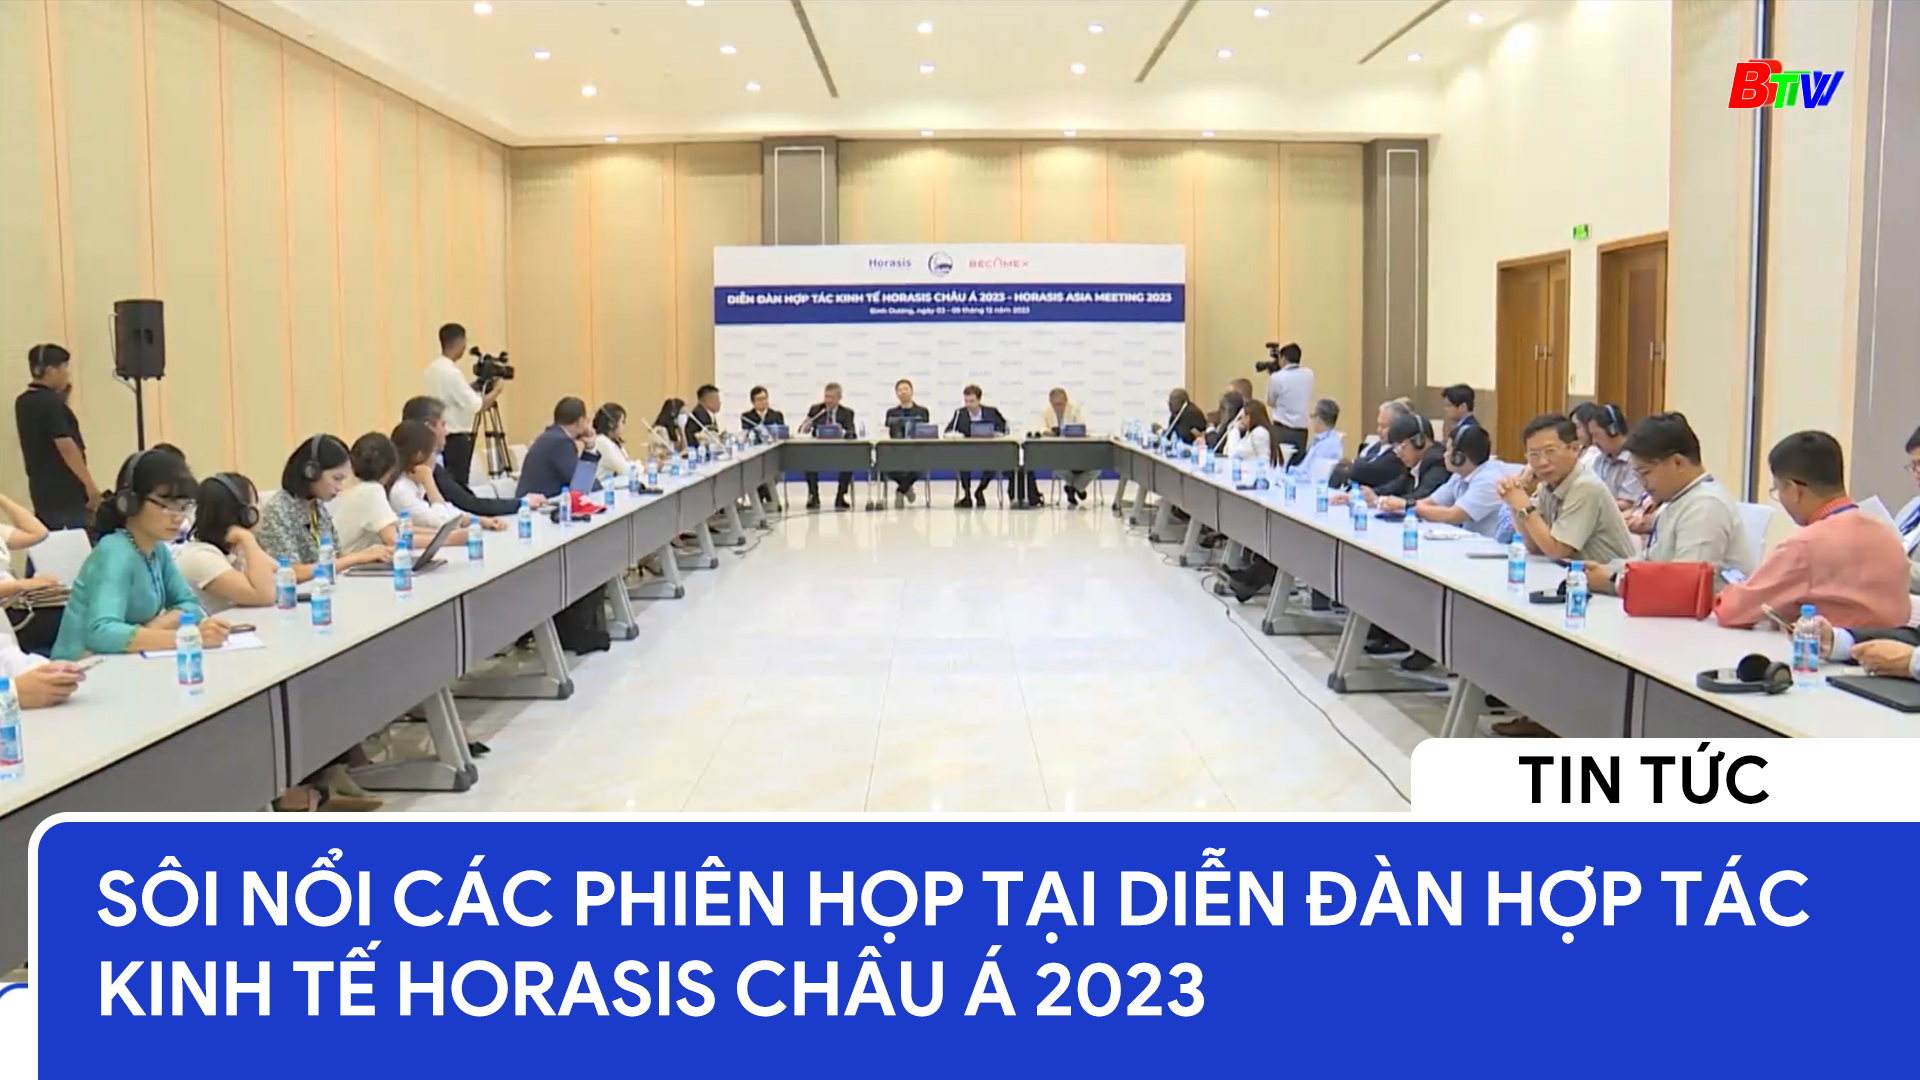 Sôi nổi các phiên họp tại Diễn đàn hợp tác kinh tế HORASIS Châu Á 2023